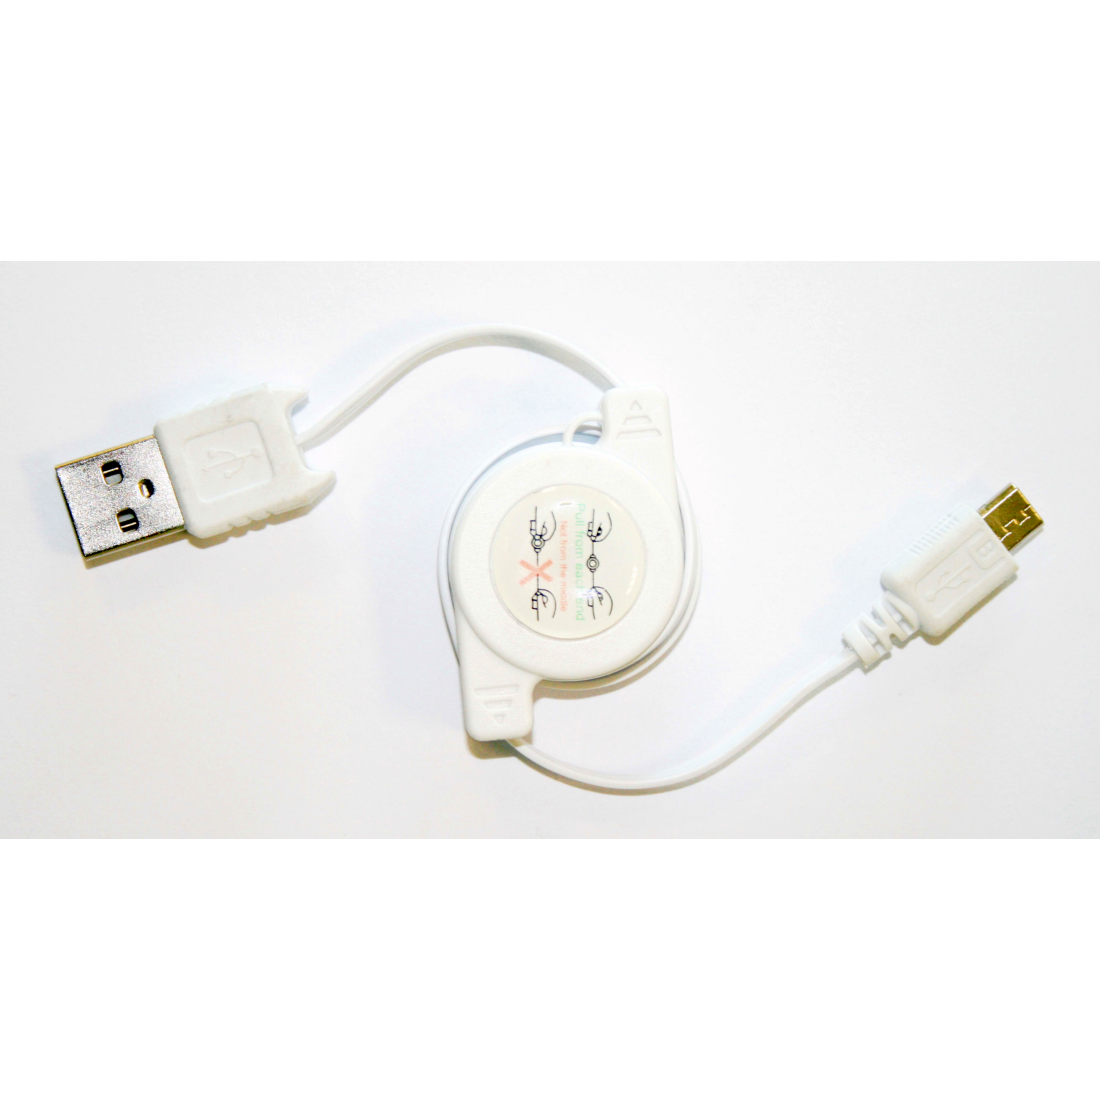 Incarcator cablu date micro usb Bottari